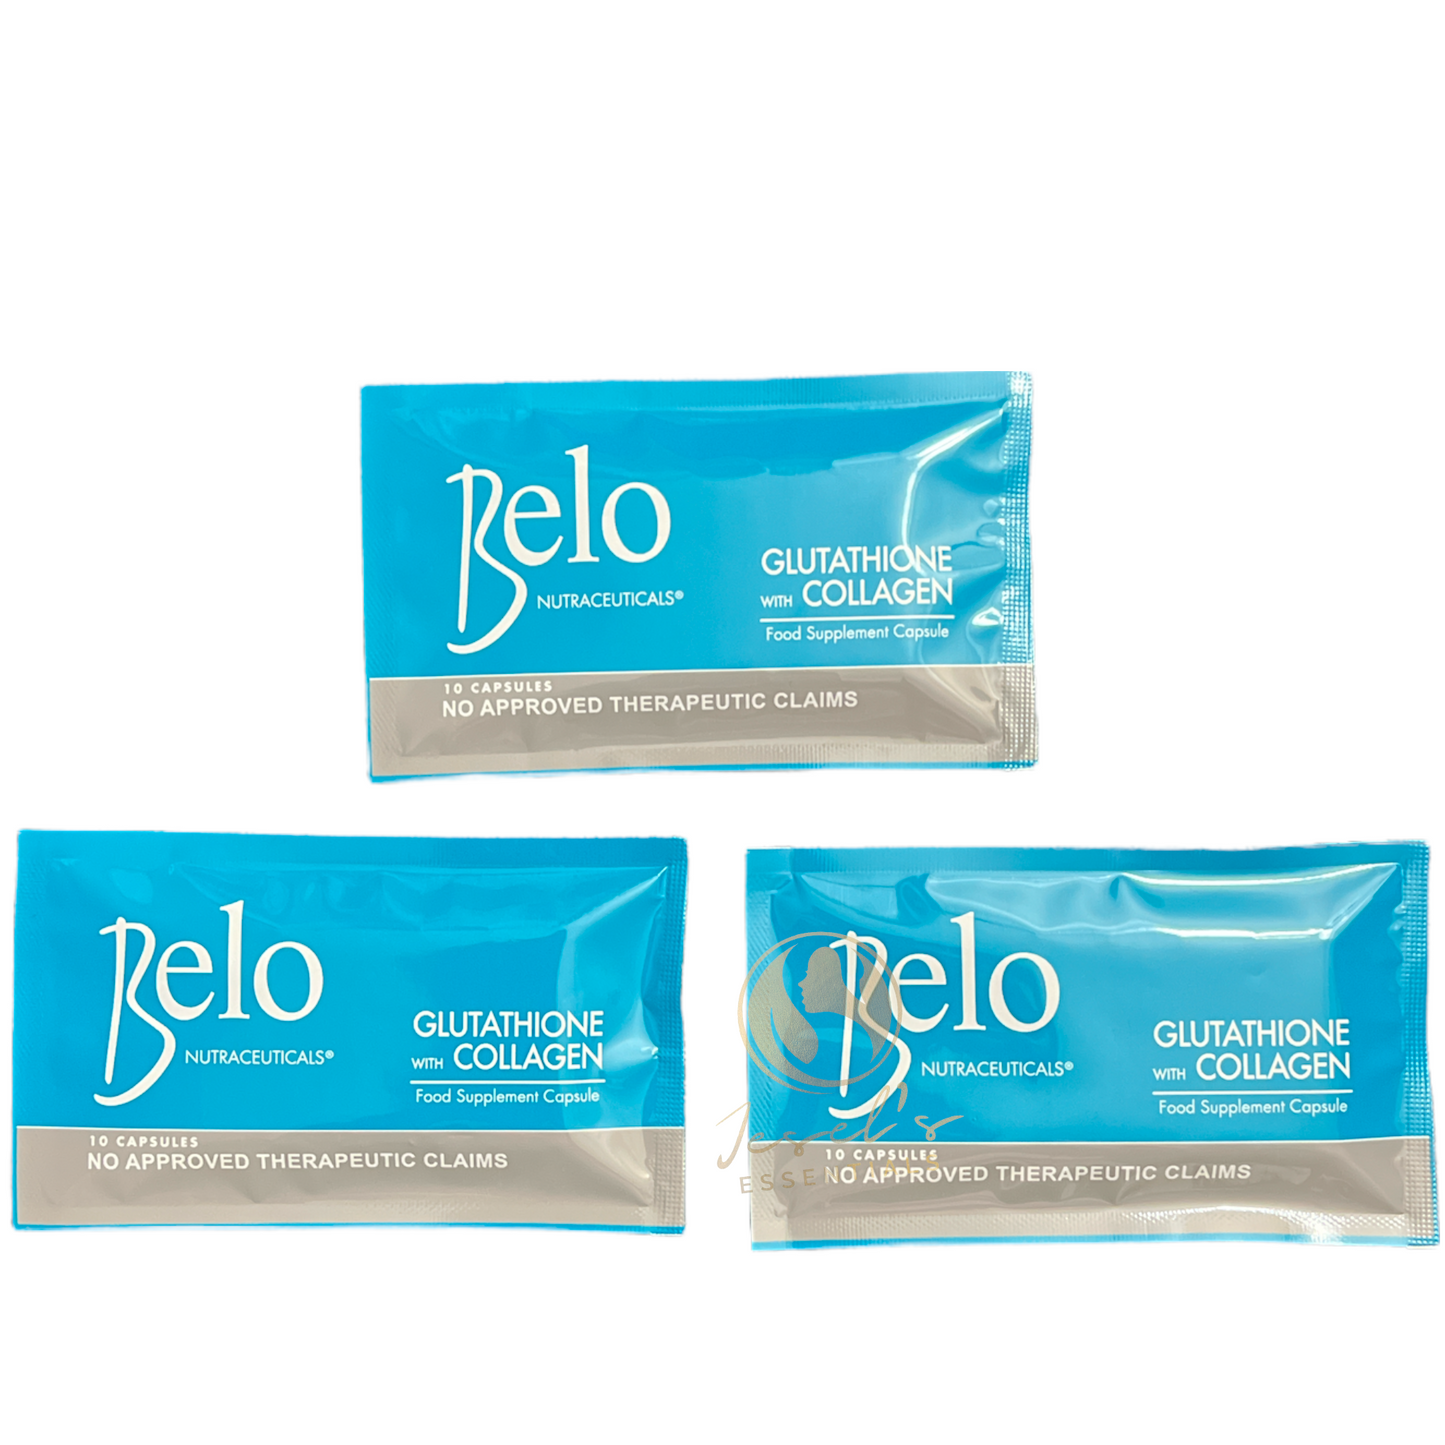 Belo Essentials Glutathione + Collagen Dietary Supplement 30 Capsules - 15 Day